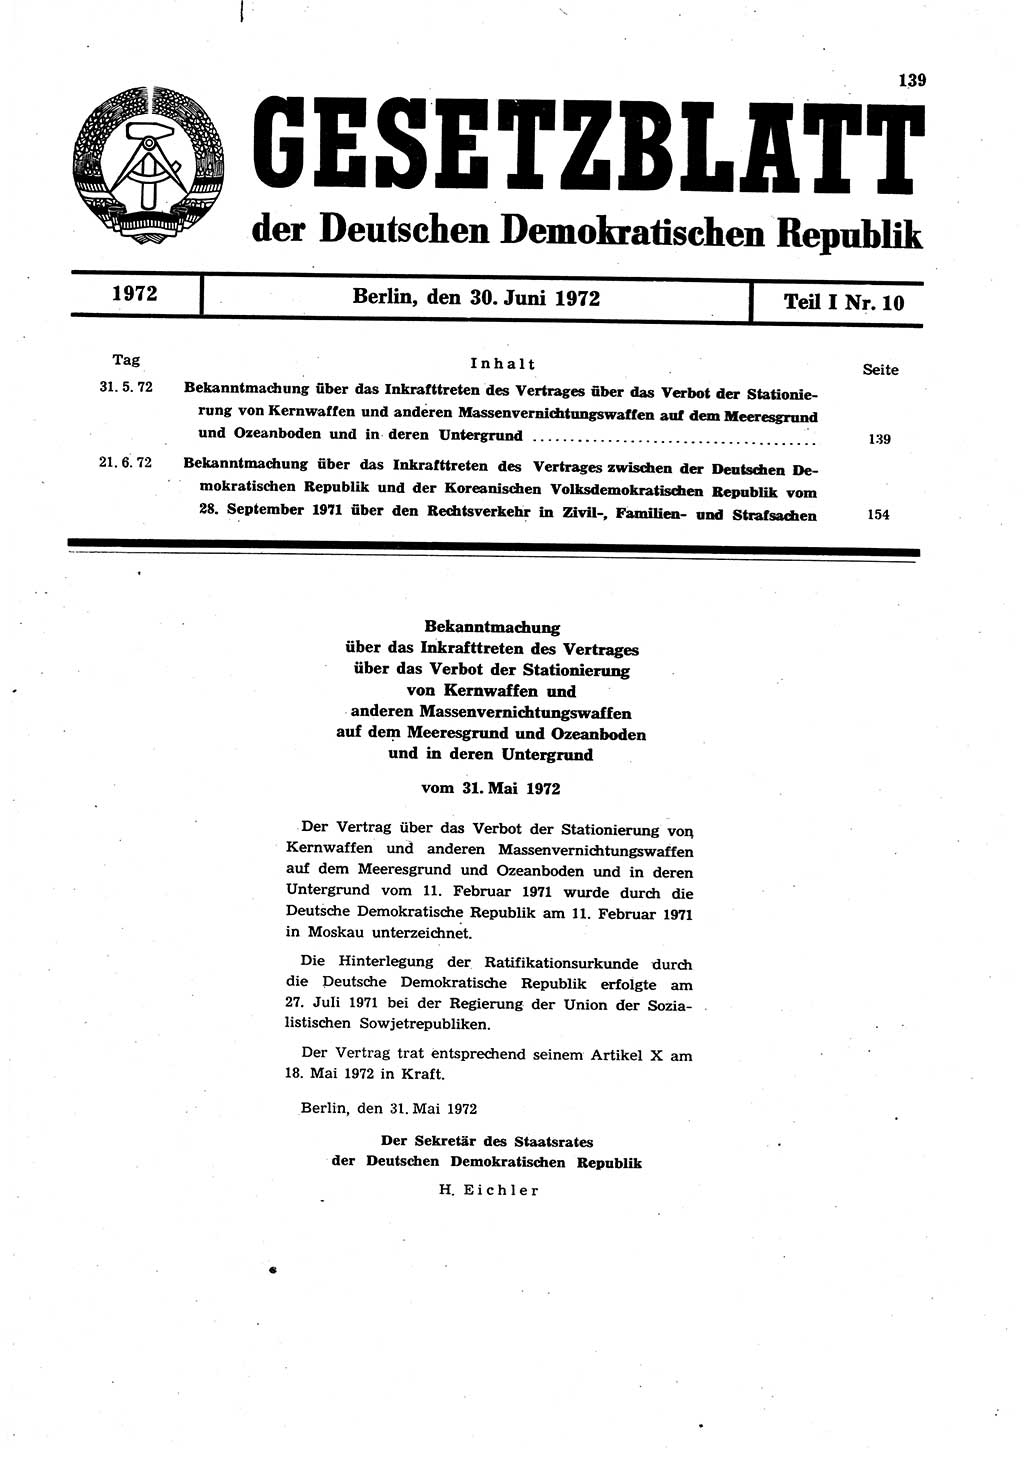 Gesetzblatt (GBl.) der Deutschen Demokratischen Republik (DDR) Teil Ⅰ 1972, Seite 139 (GBl. DDR Ⅰ 1972, S. 139)